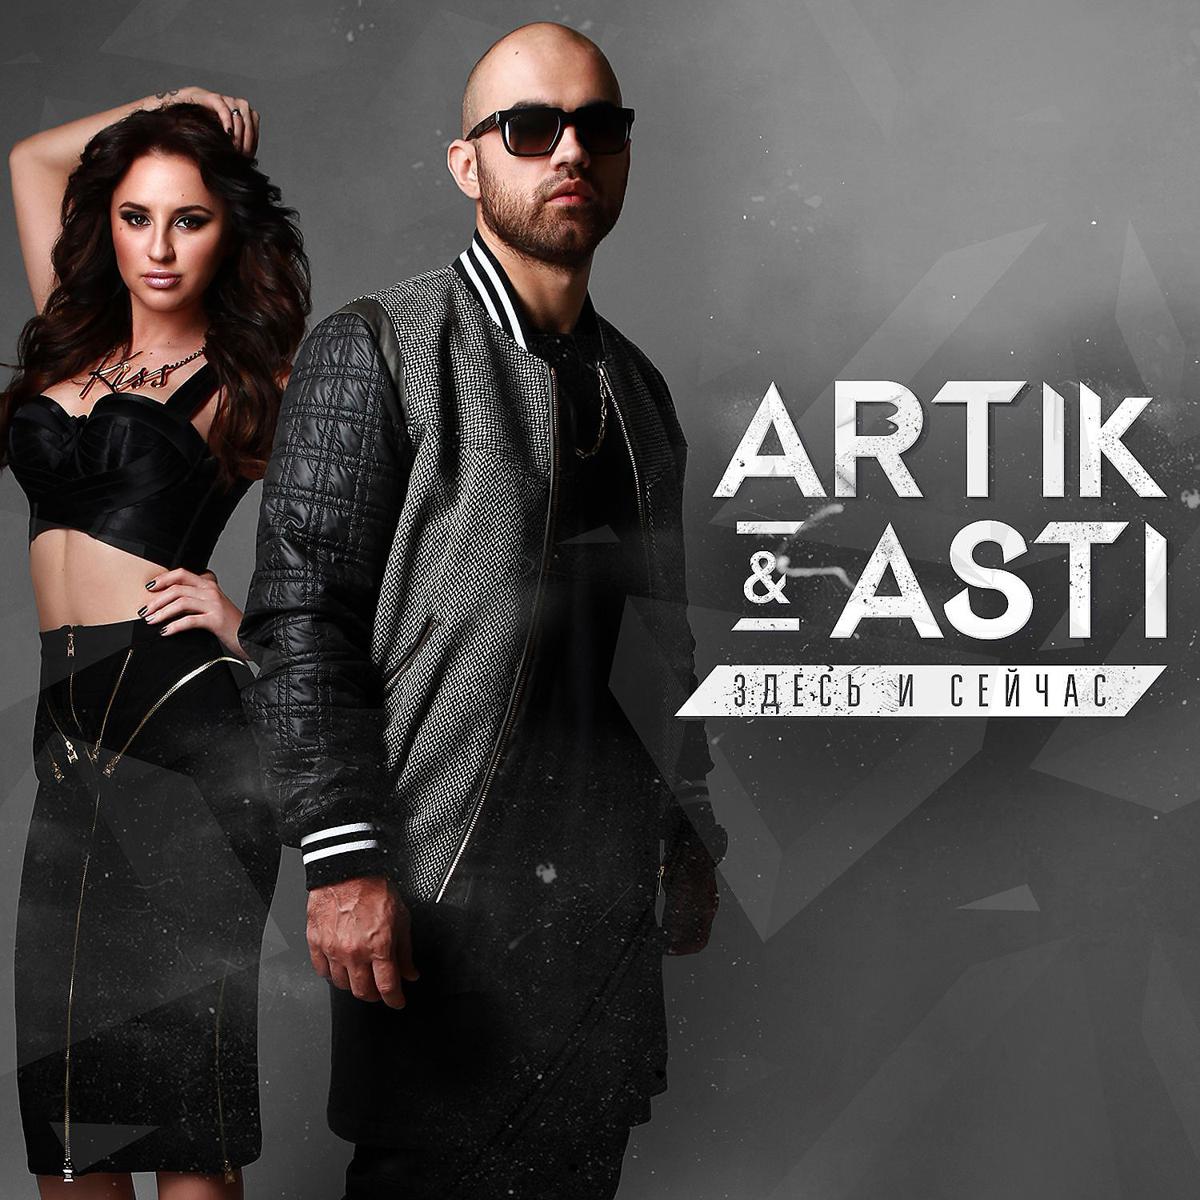 Прослушать песни новинки. Артик и Асти. Artik Asti здесь и сейчас 2015. Artik Asti обложка. Артик и Асти 2014.